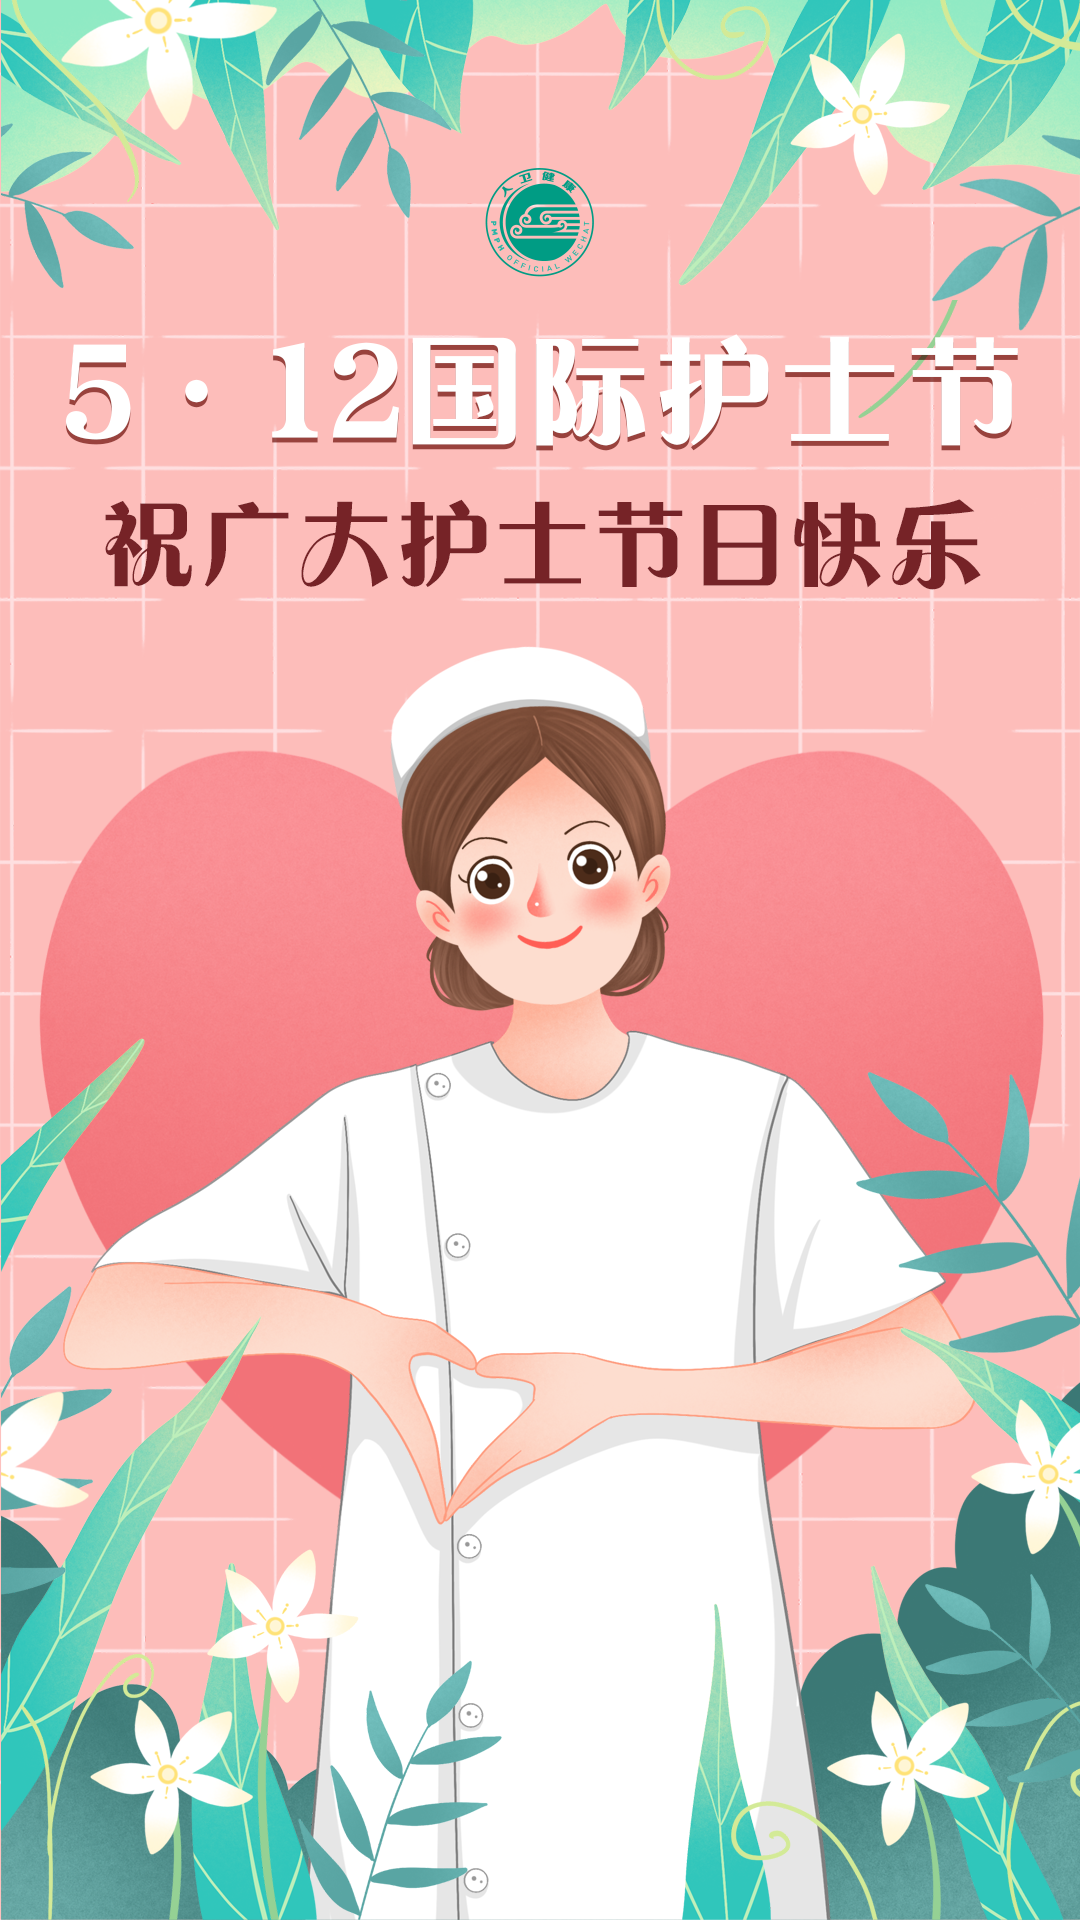 5·12国际护士节